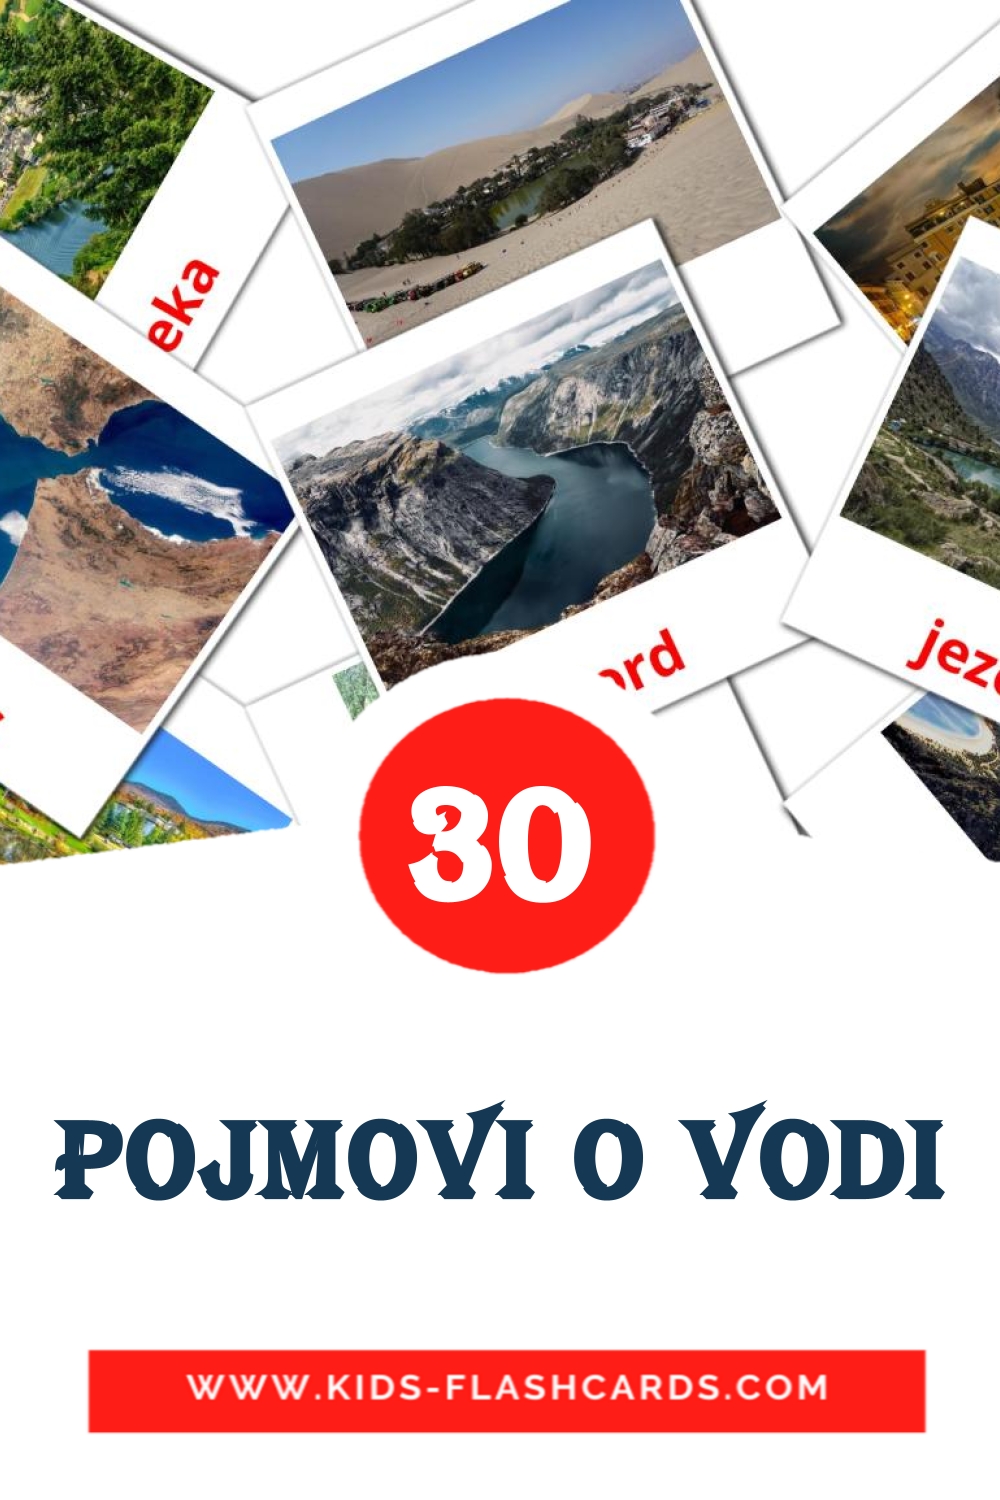 Pojmovi o vodi на сербском для Детского Сада (30 карточек)